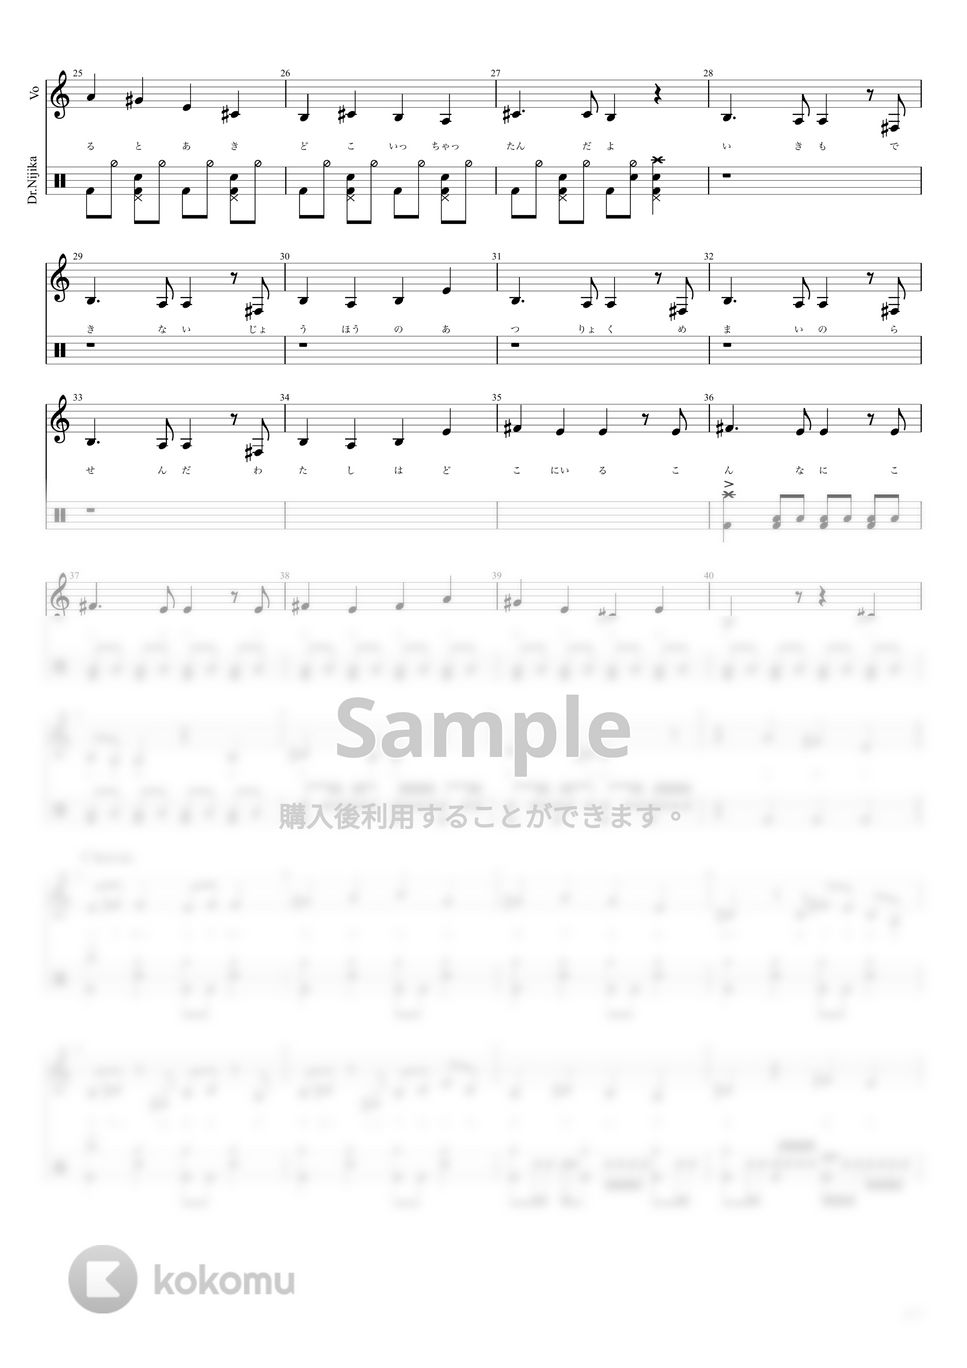 結束バンド - ギターと孤独と蒼い惑星 Full Ver. (伊地知虹夏Part) by キリギリス